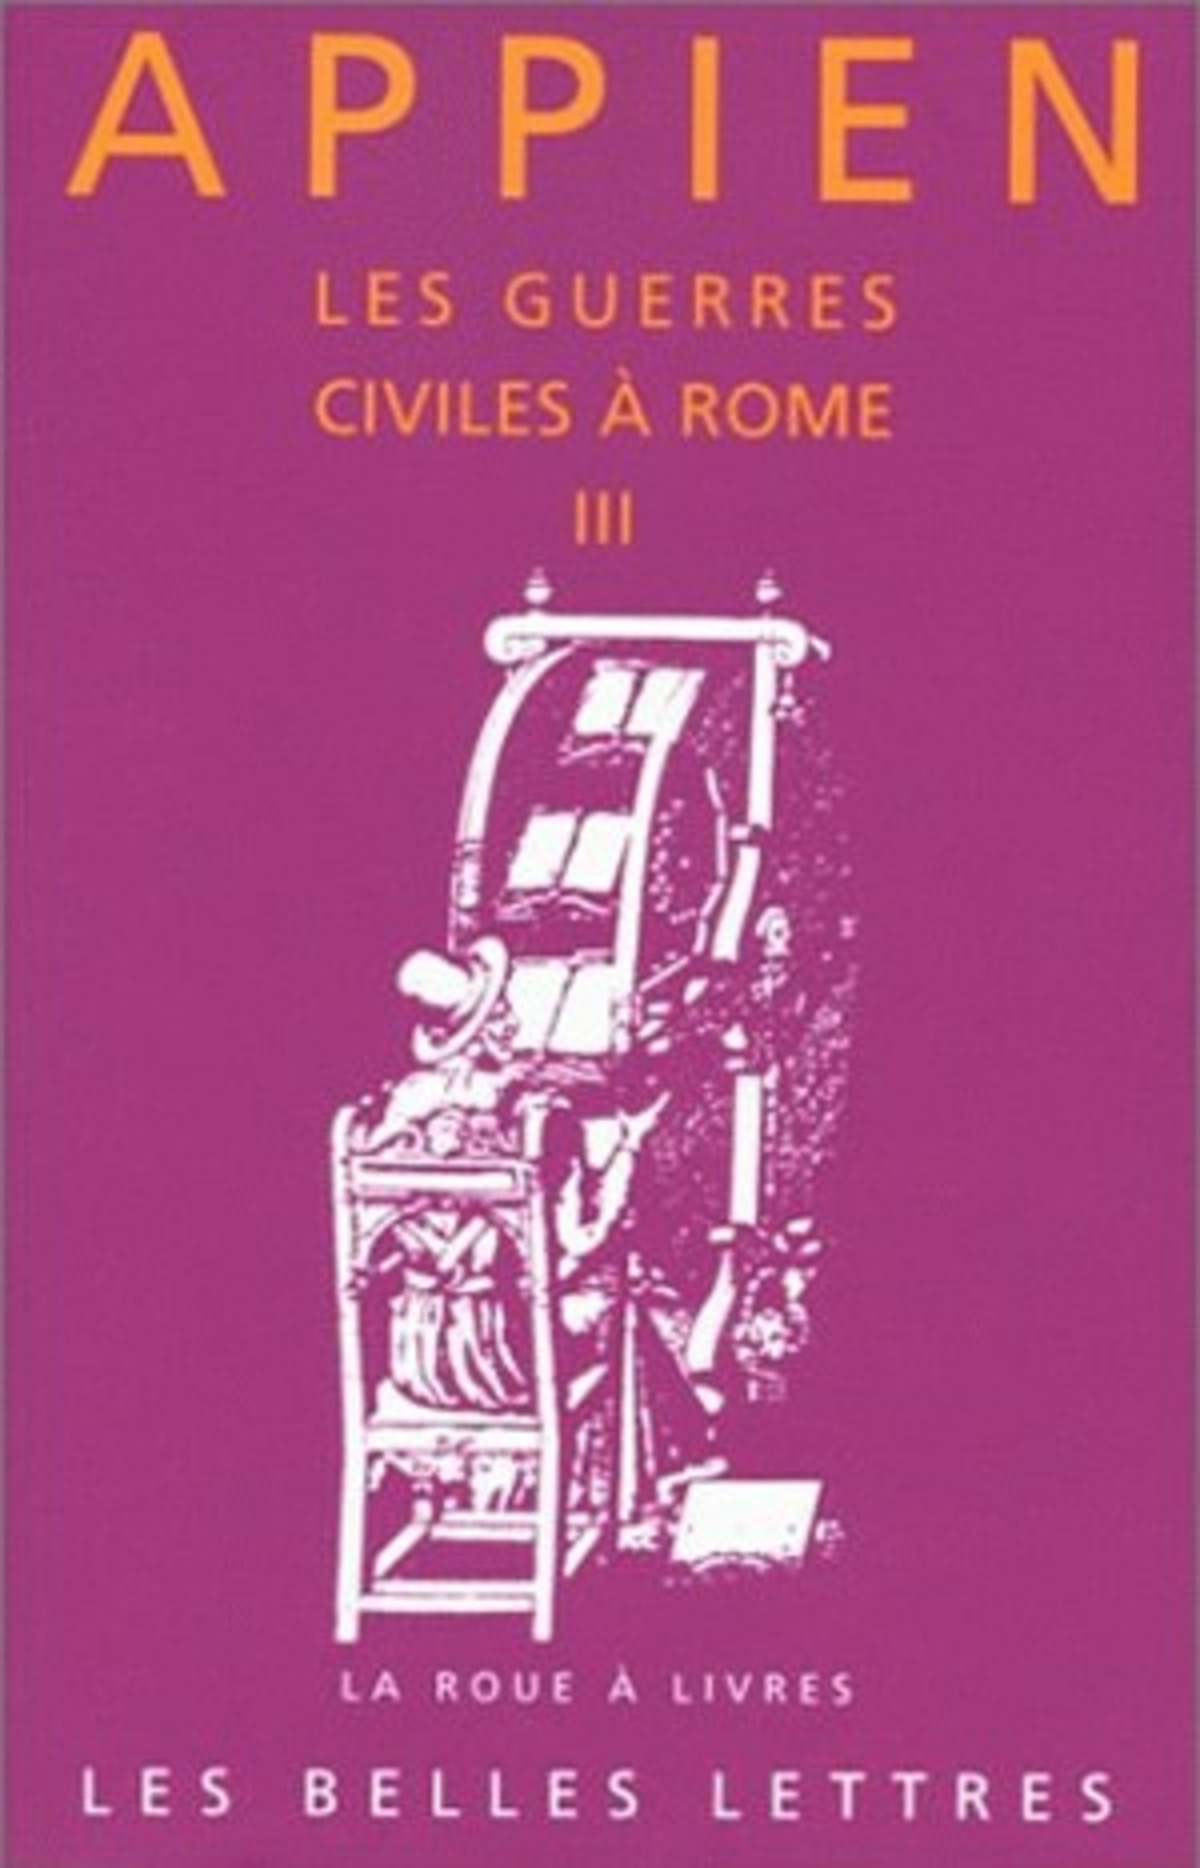 Les Guerres civiles à Rome - Livre III